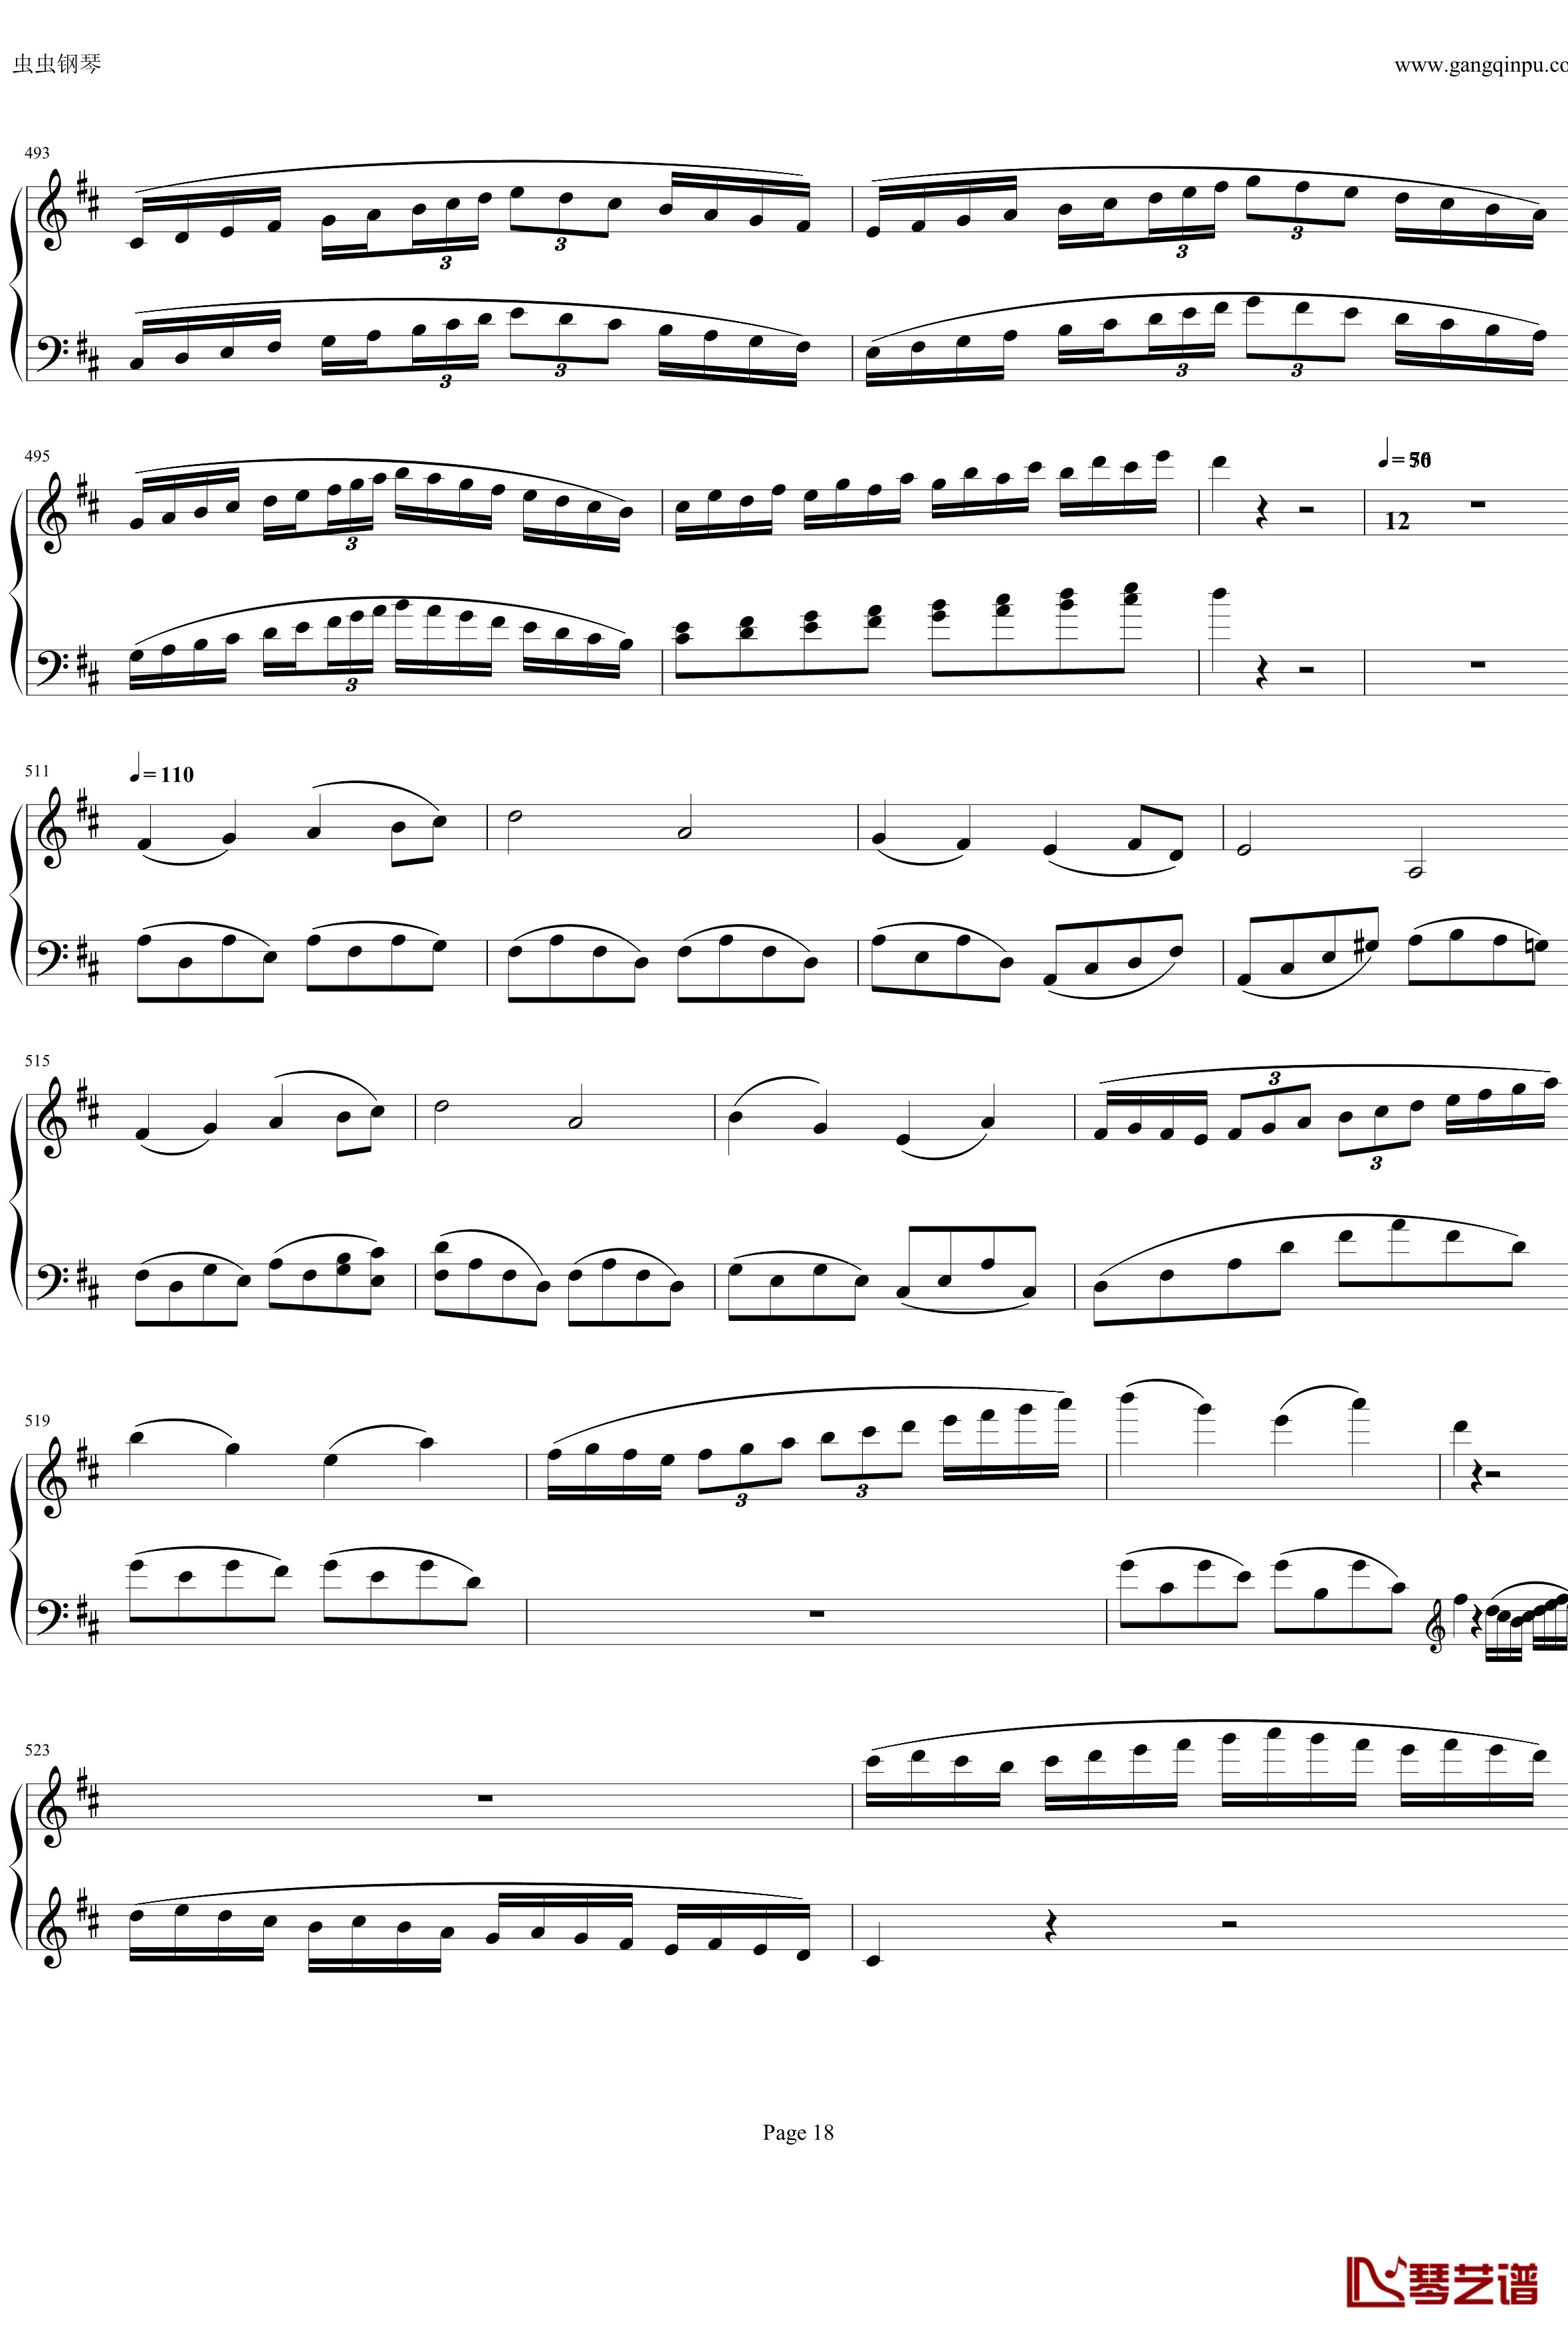 钢琴协奏曲Op61第一乐章钢琴谱-贝多芬-beethoven18